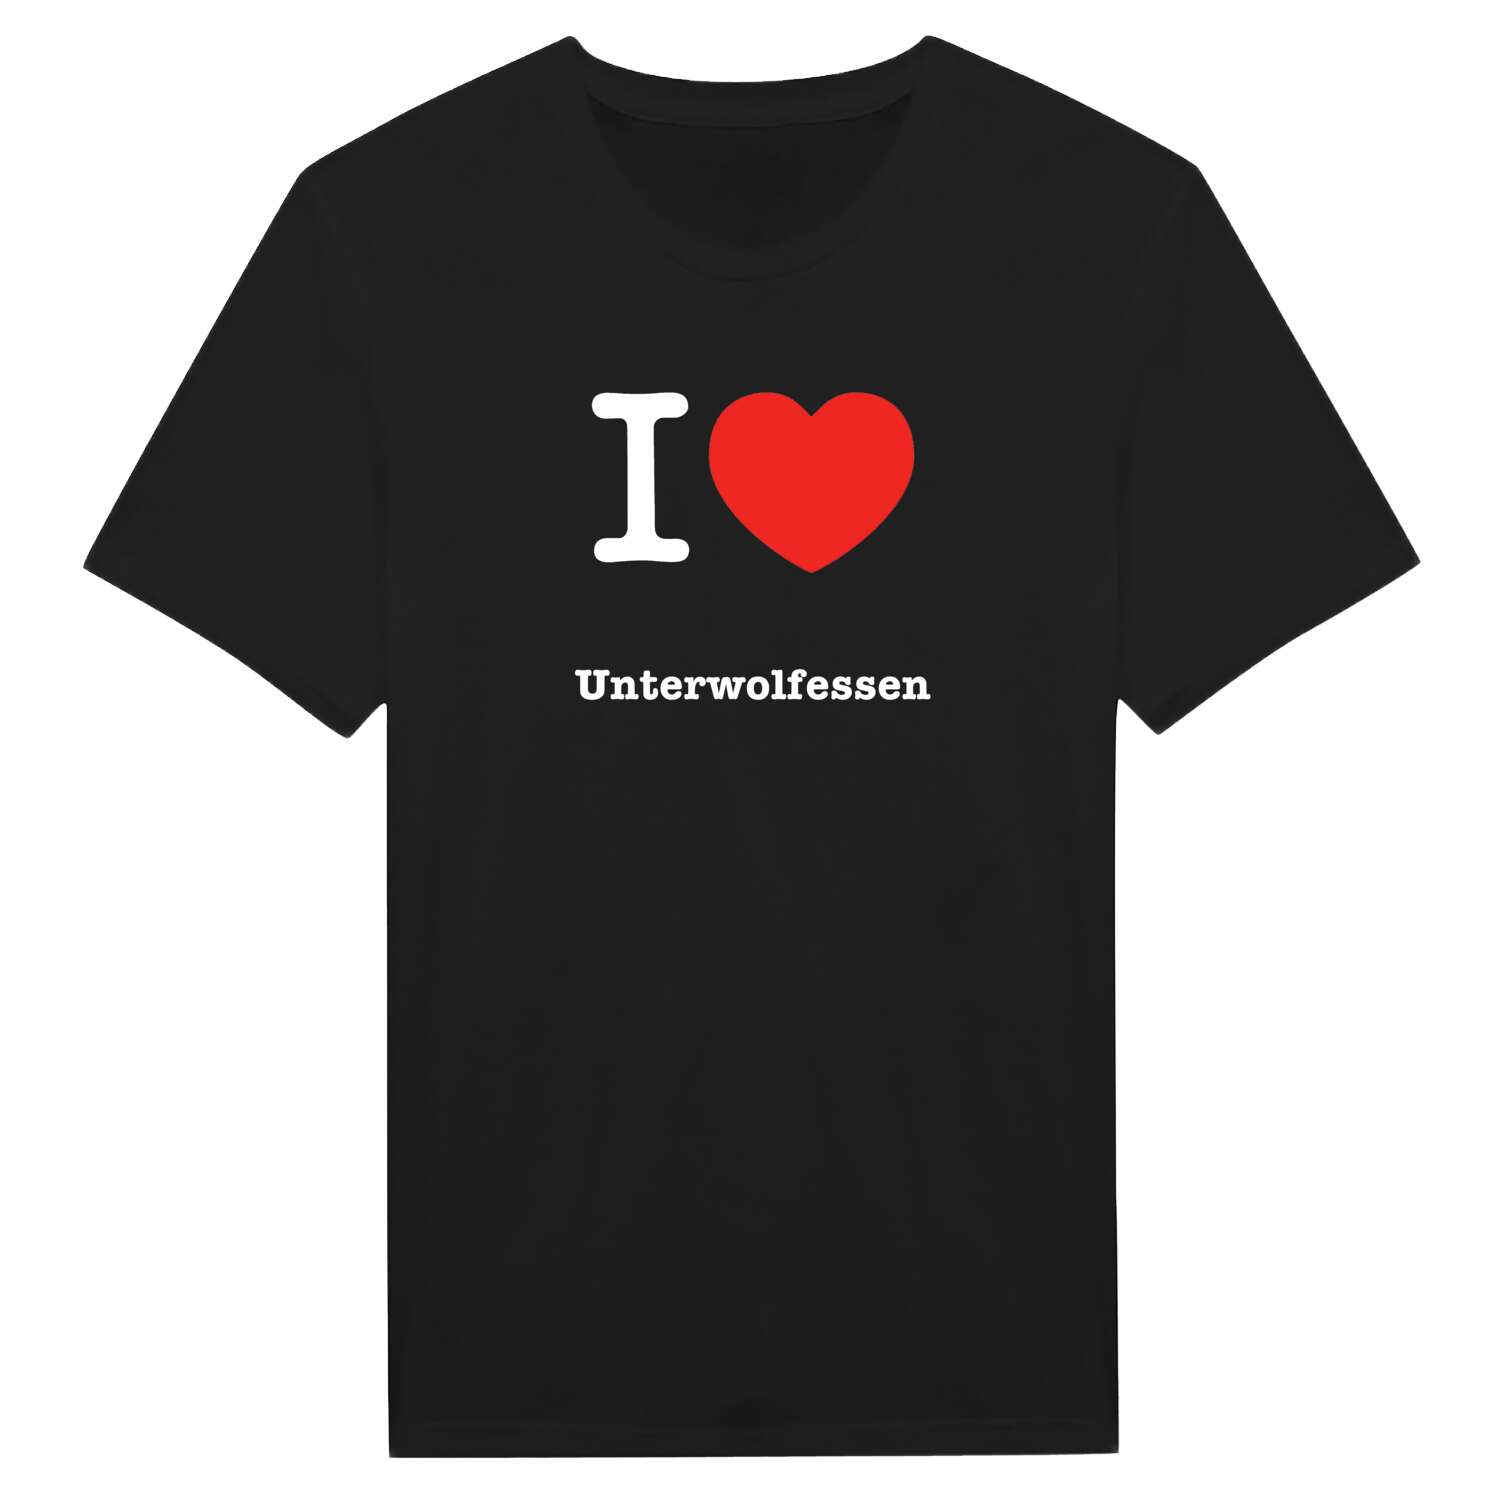 Unterwolfessen T-Shirt »I love«